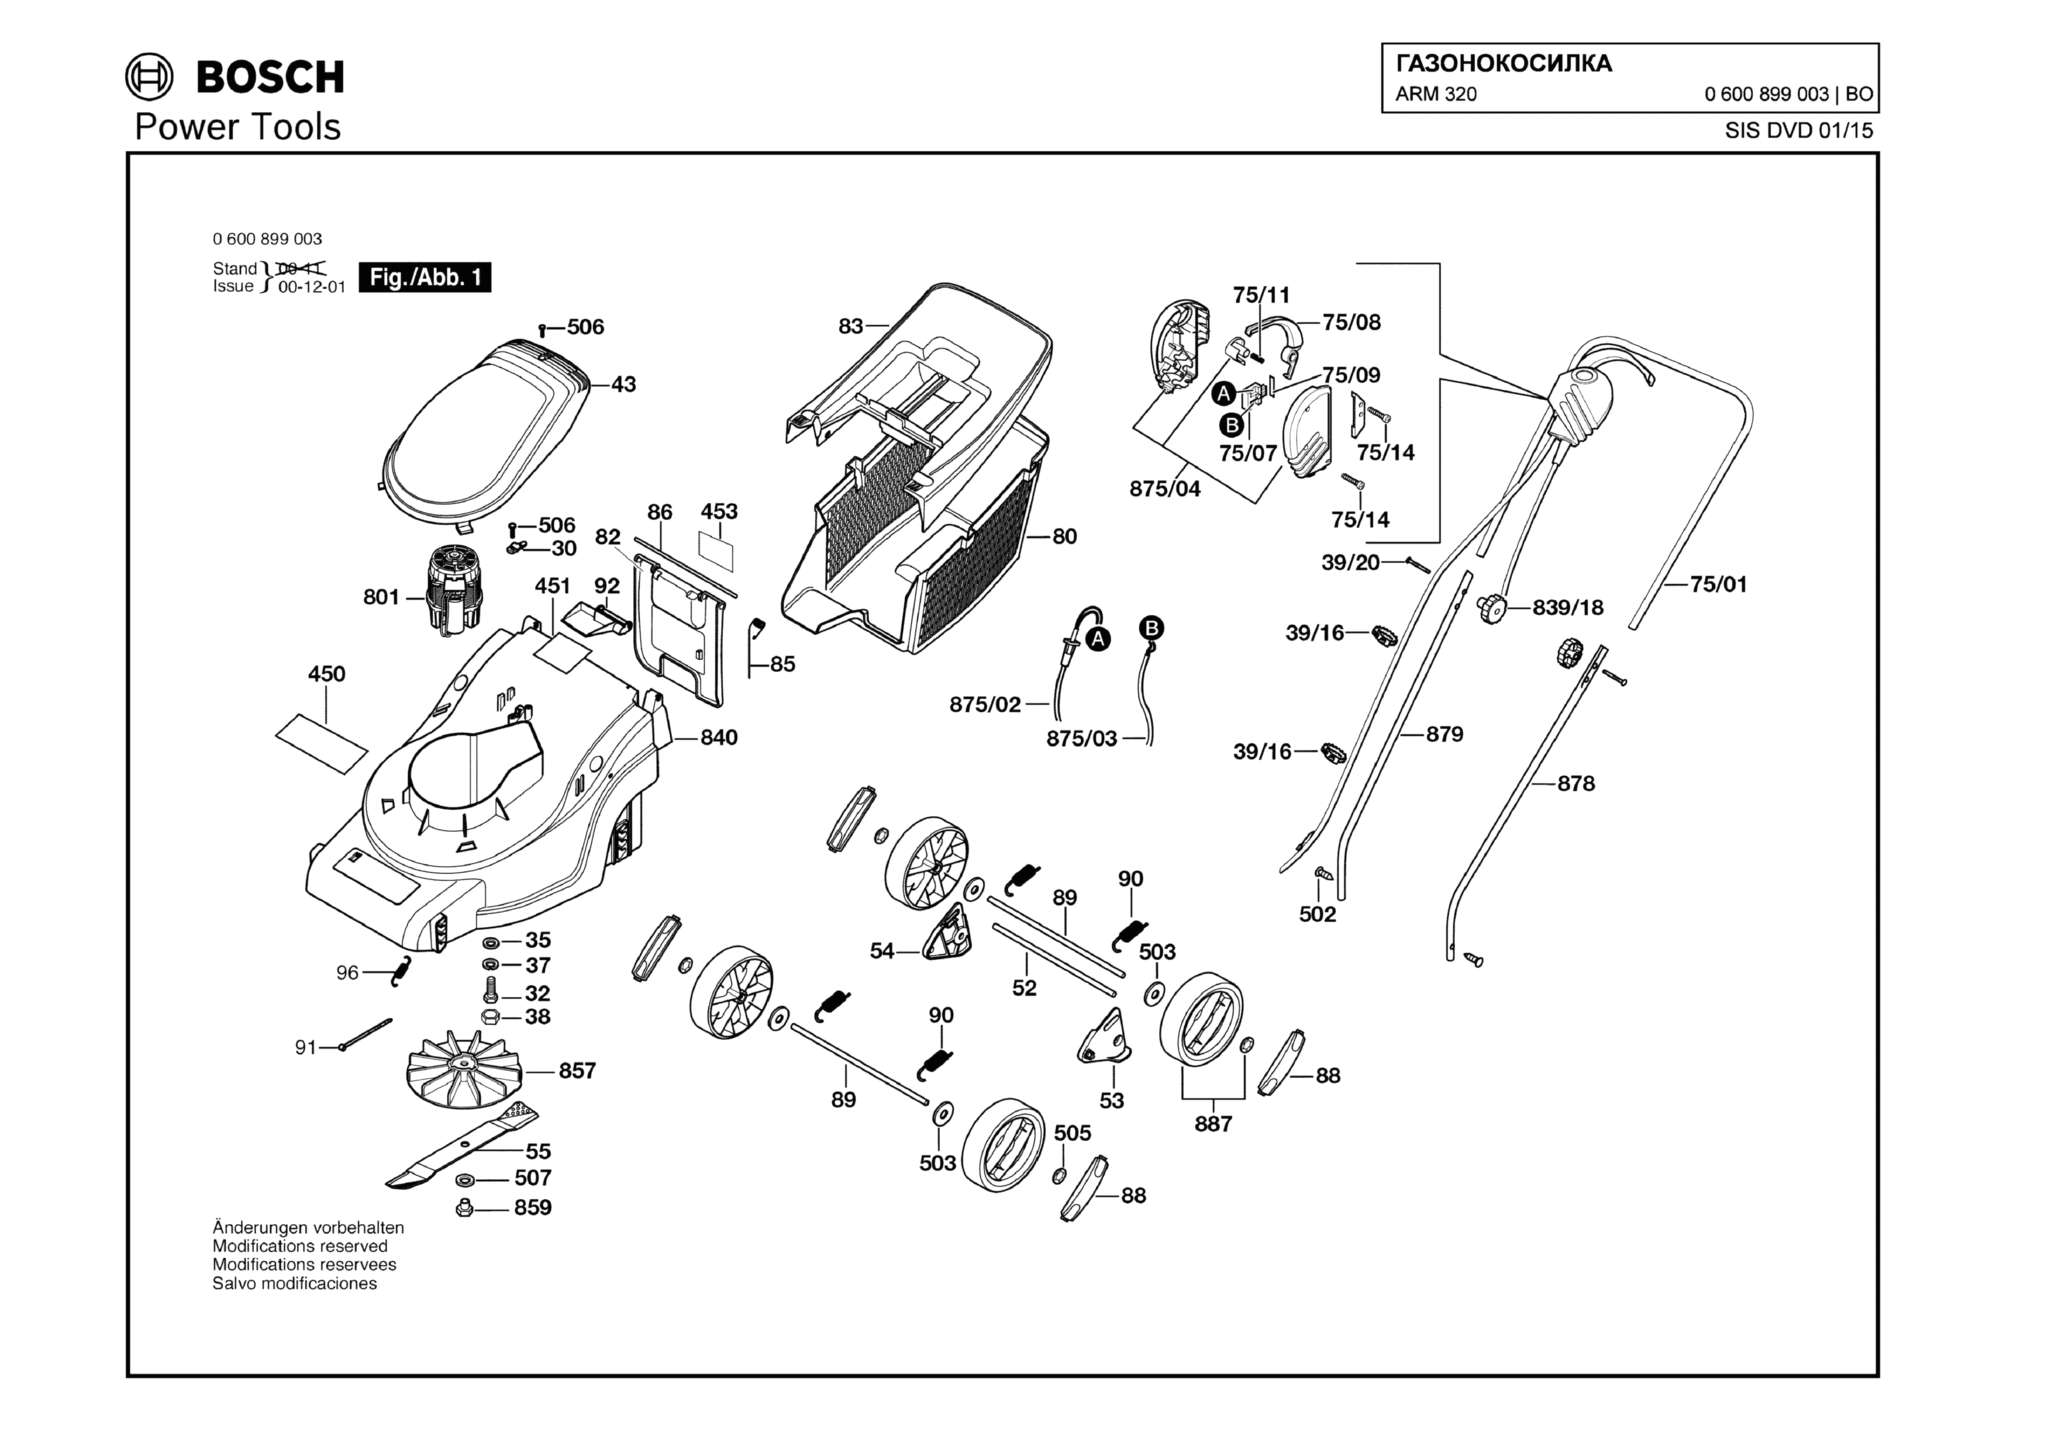 Запчасти, схема и деталировка Bosch ARM 320 (ТИП 0600899003)